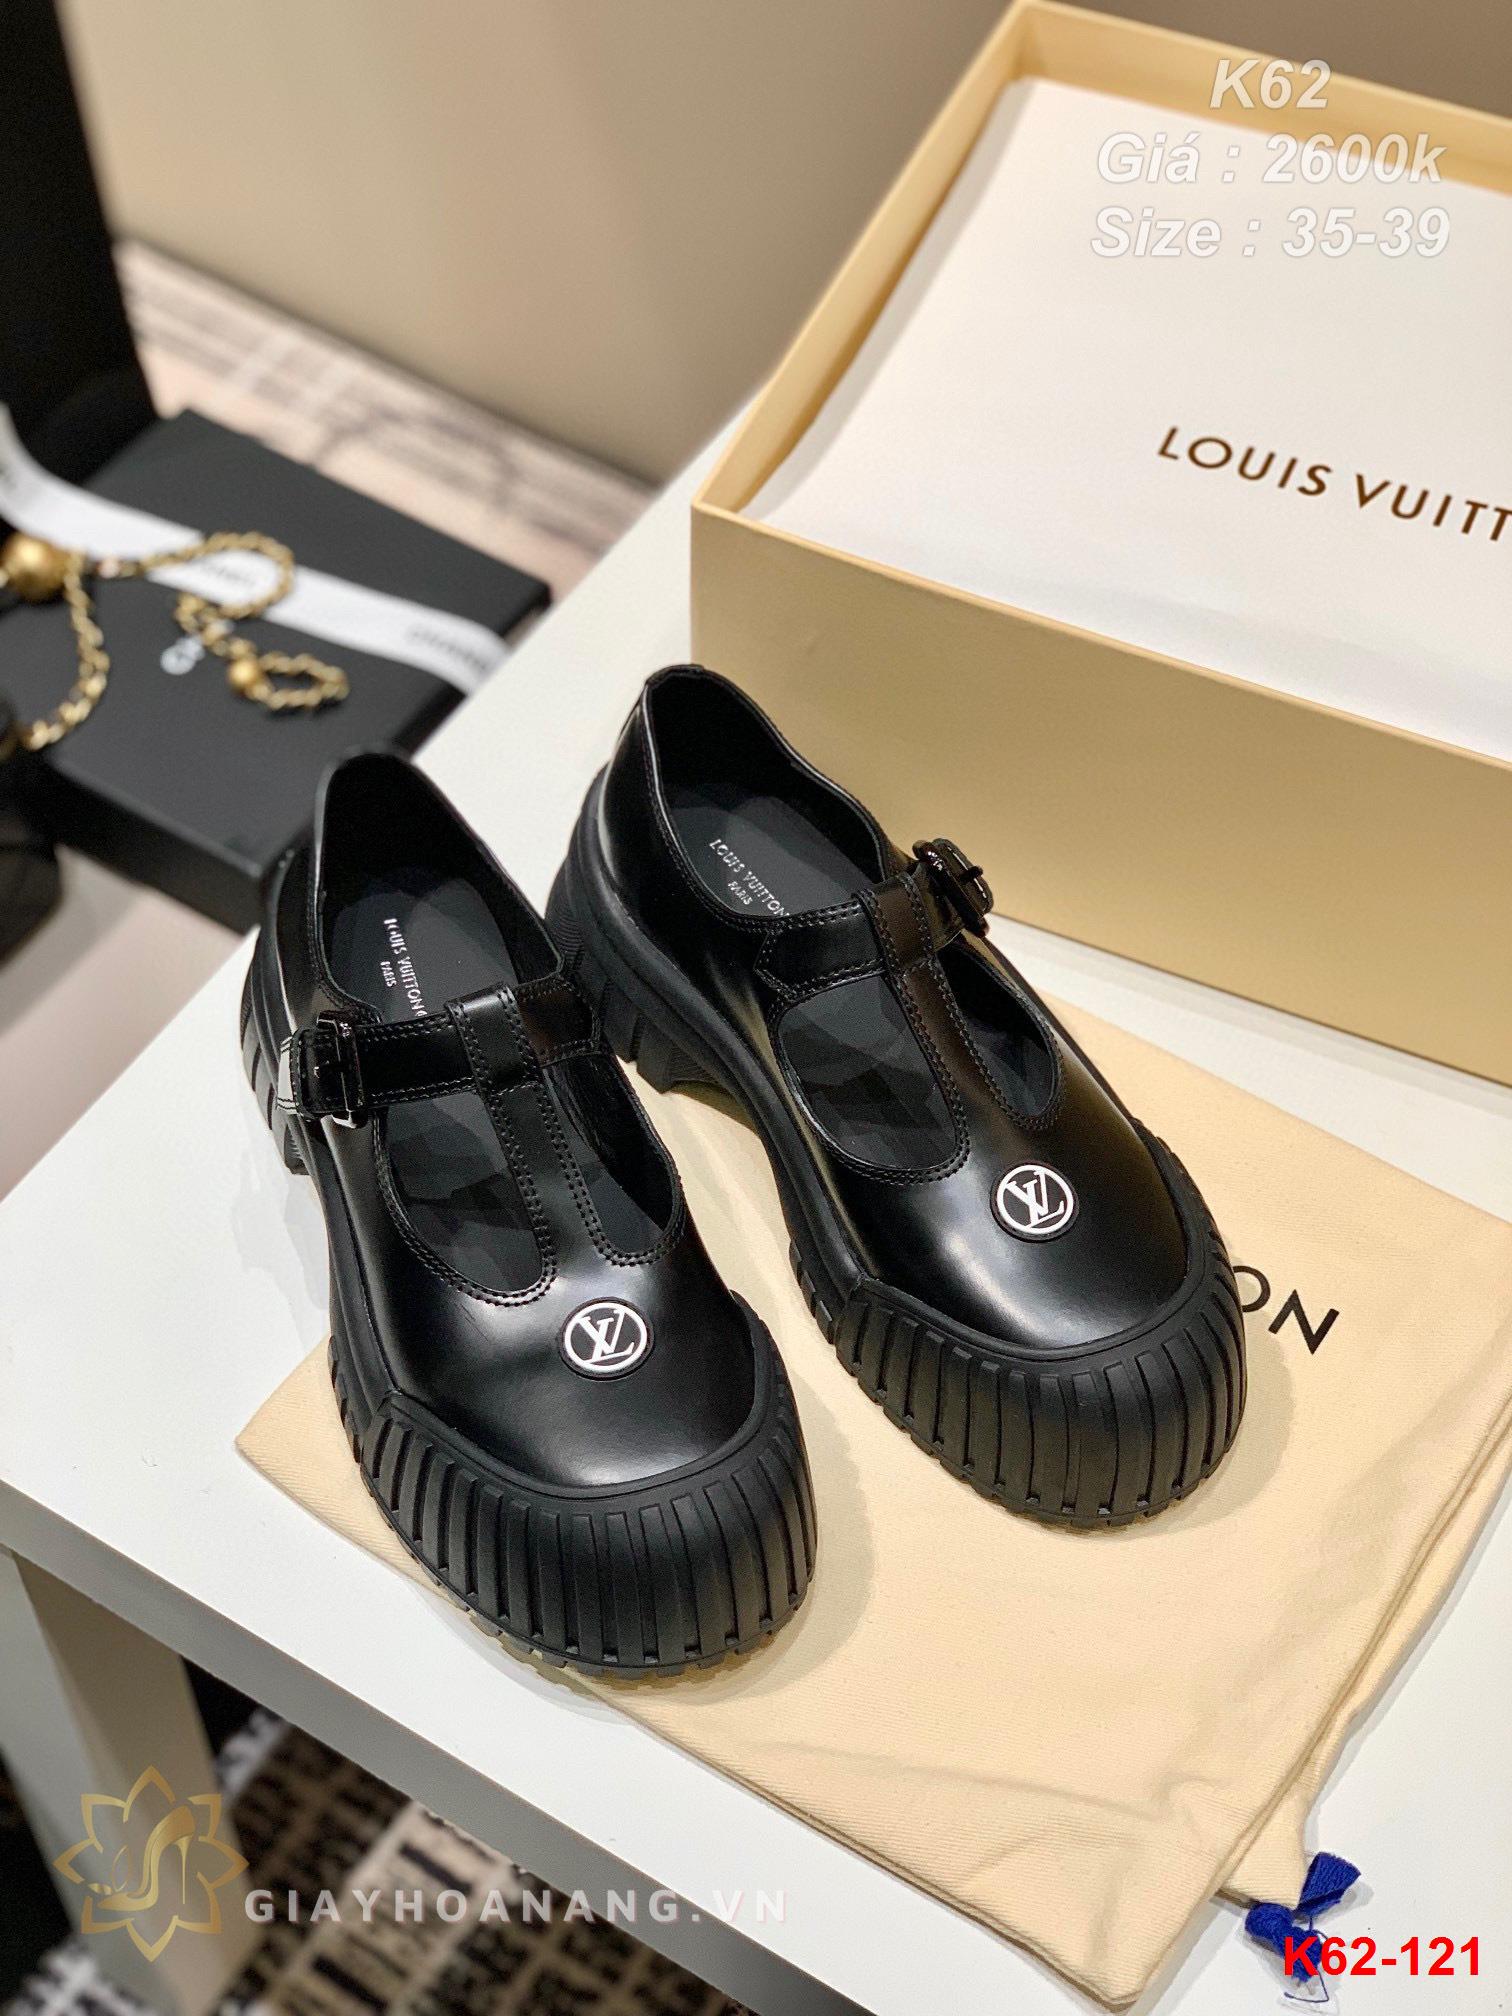 K62-121 Louis Vuitton giày thể thao siêu cấp